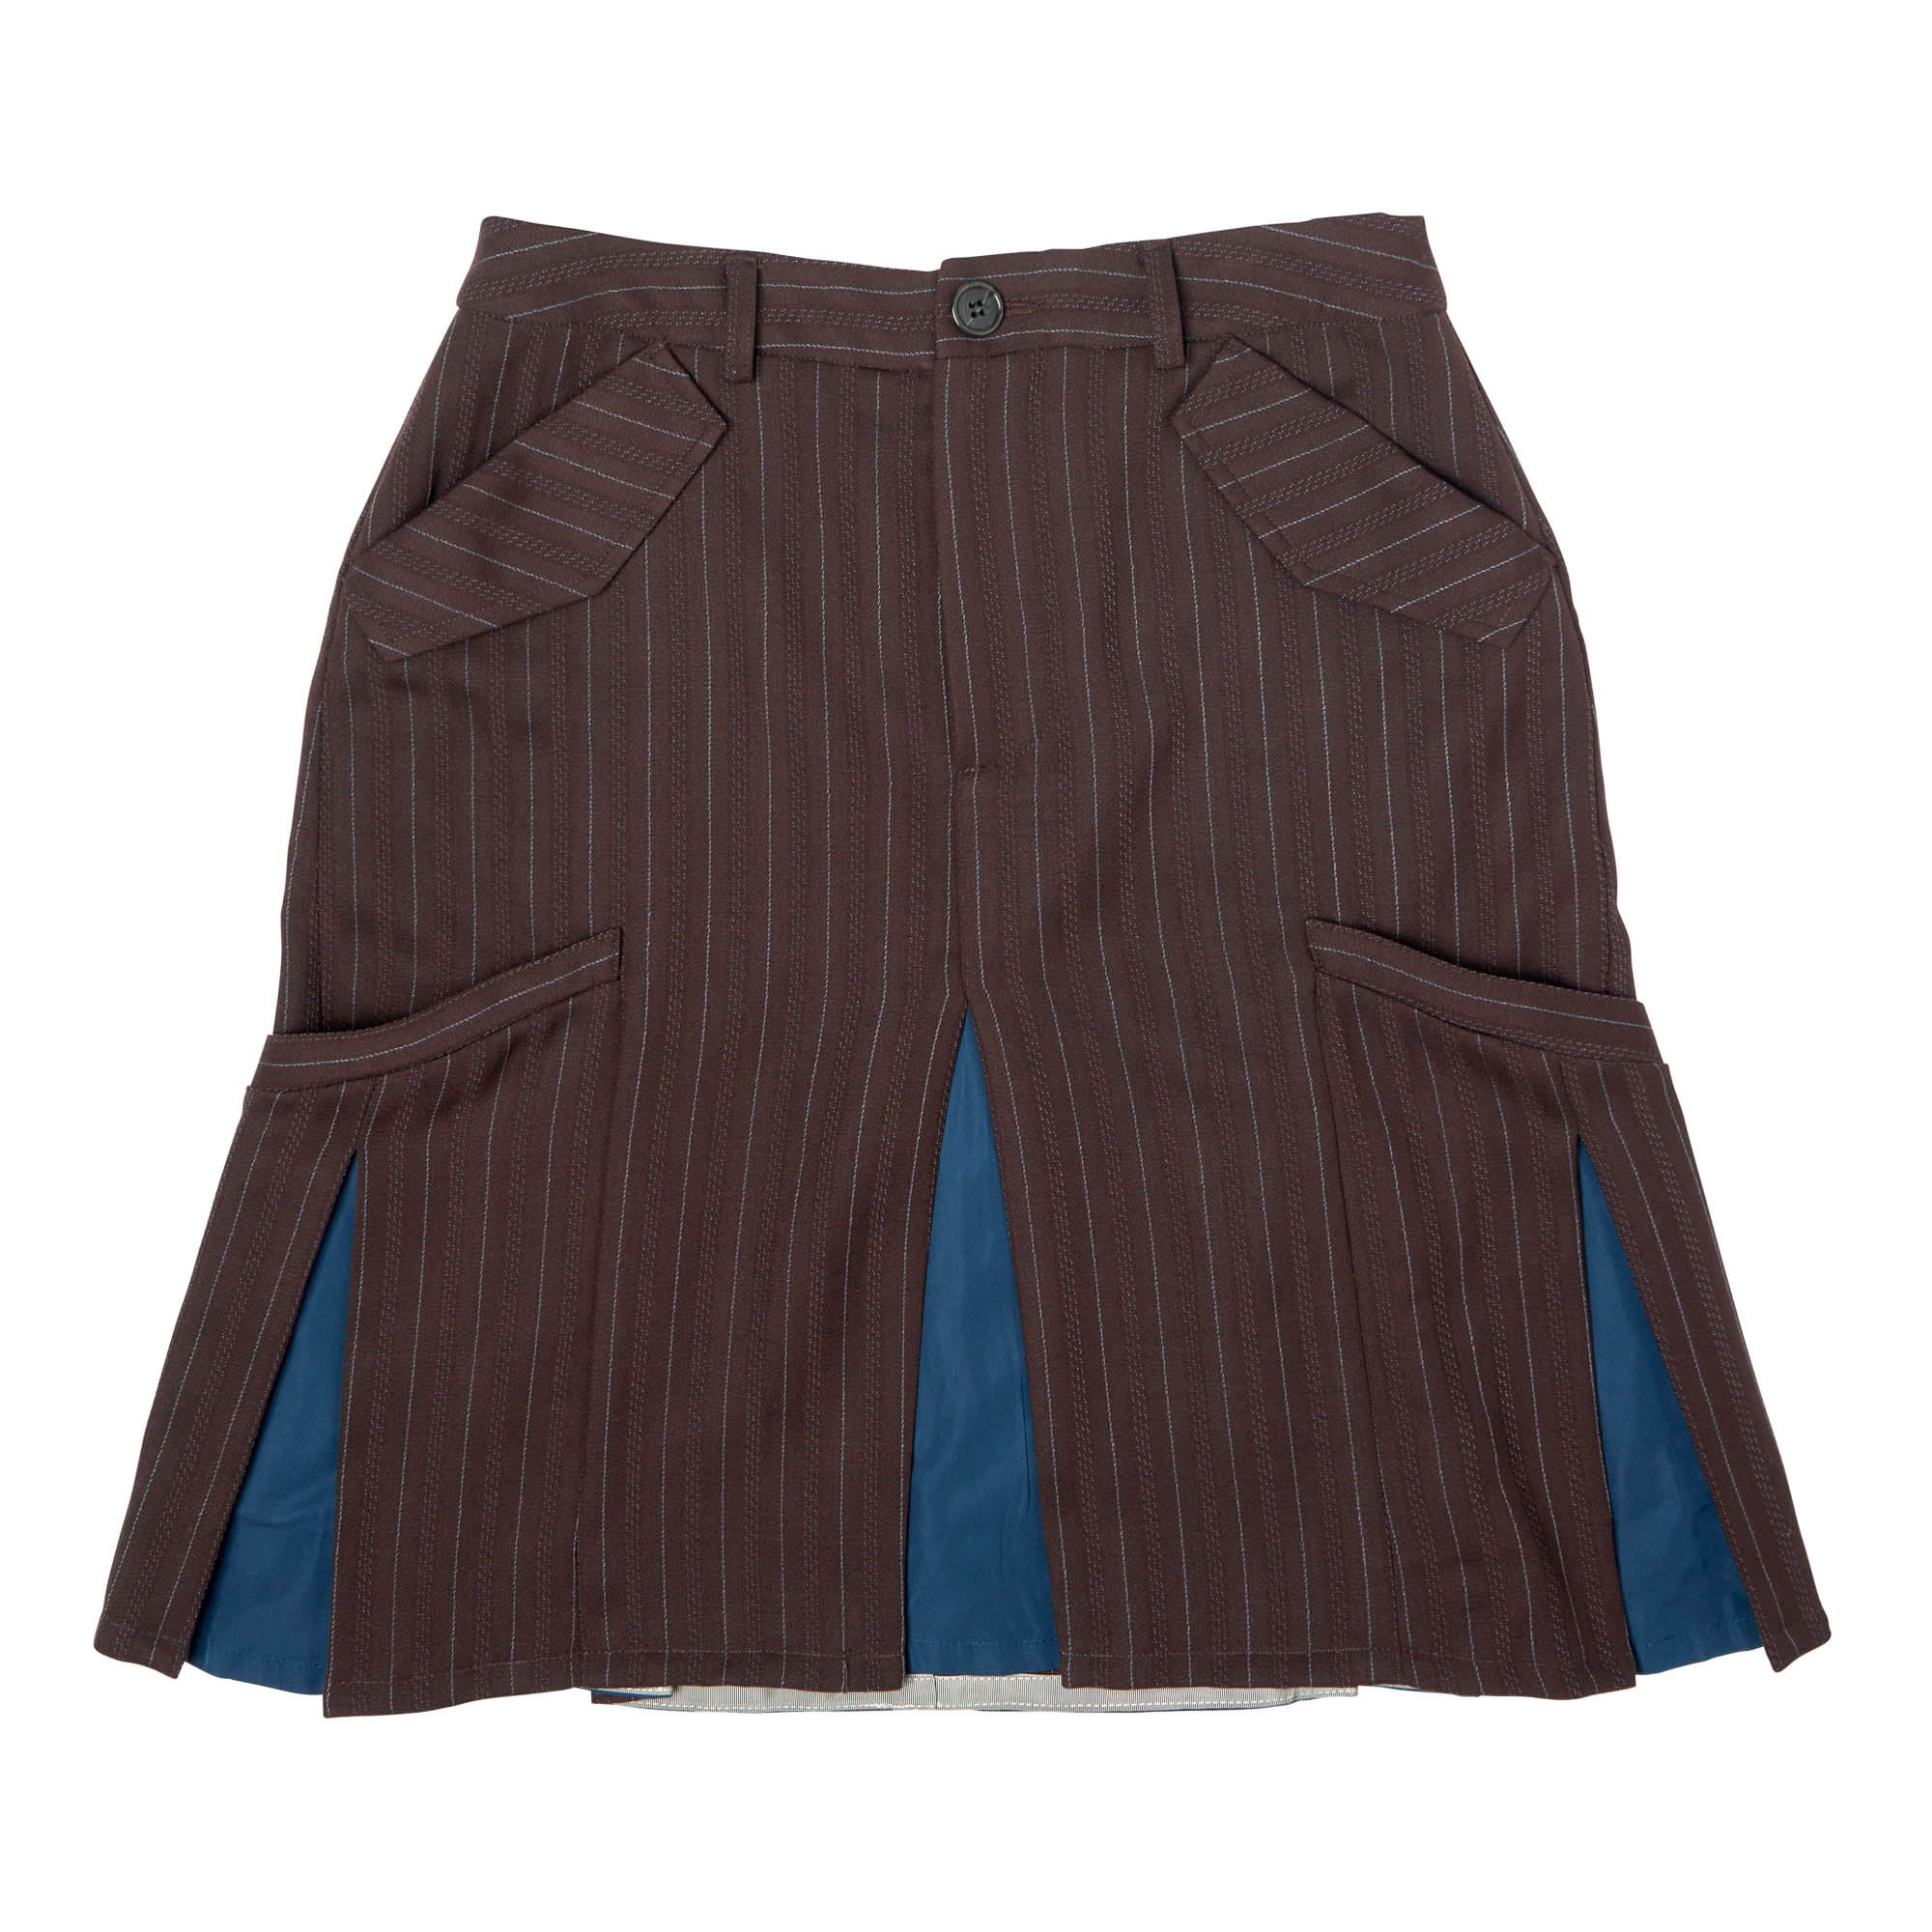 Box Pleat Skirt Virgin Wool Brown Pinstripe - PREORDER